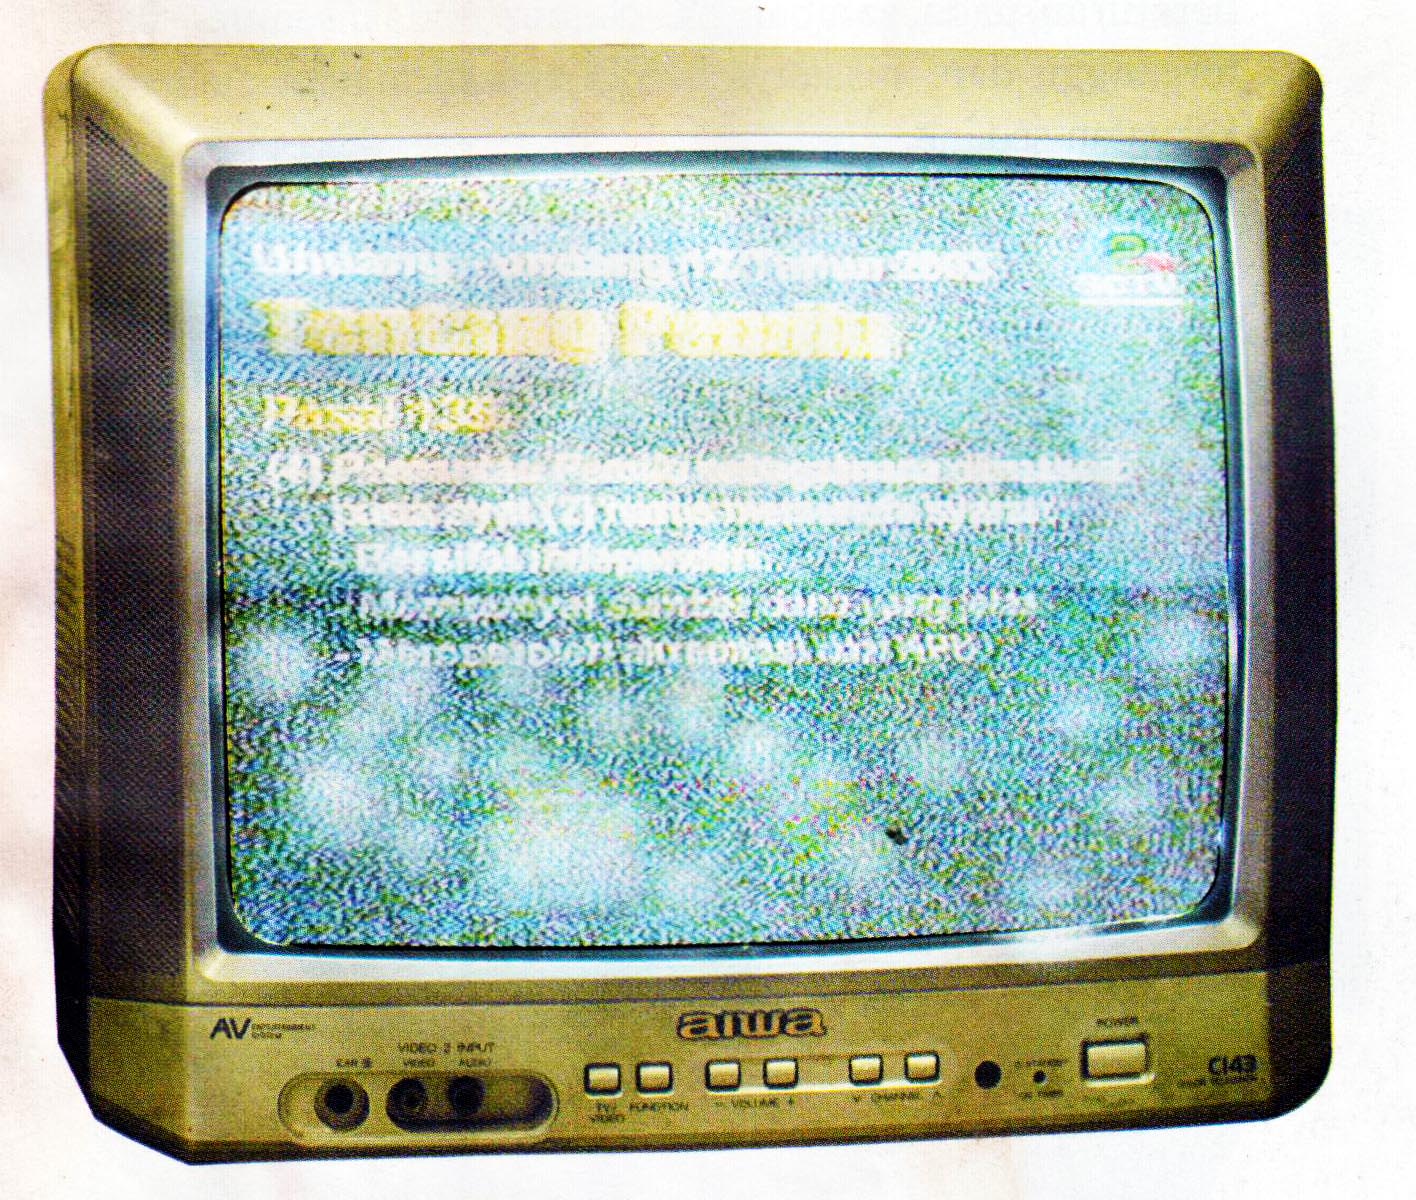 Gangguan Noise pada Gambar Tv - WWW.USAHAHOBI.COM